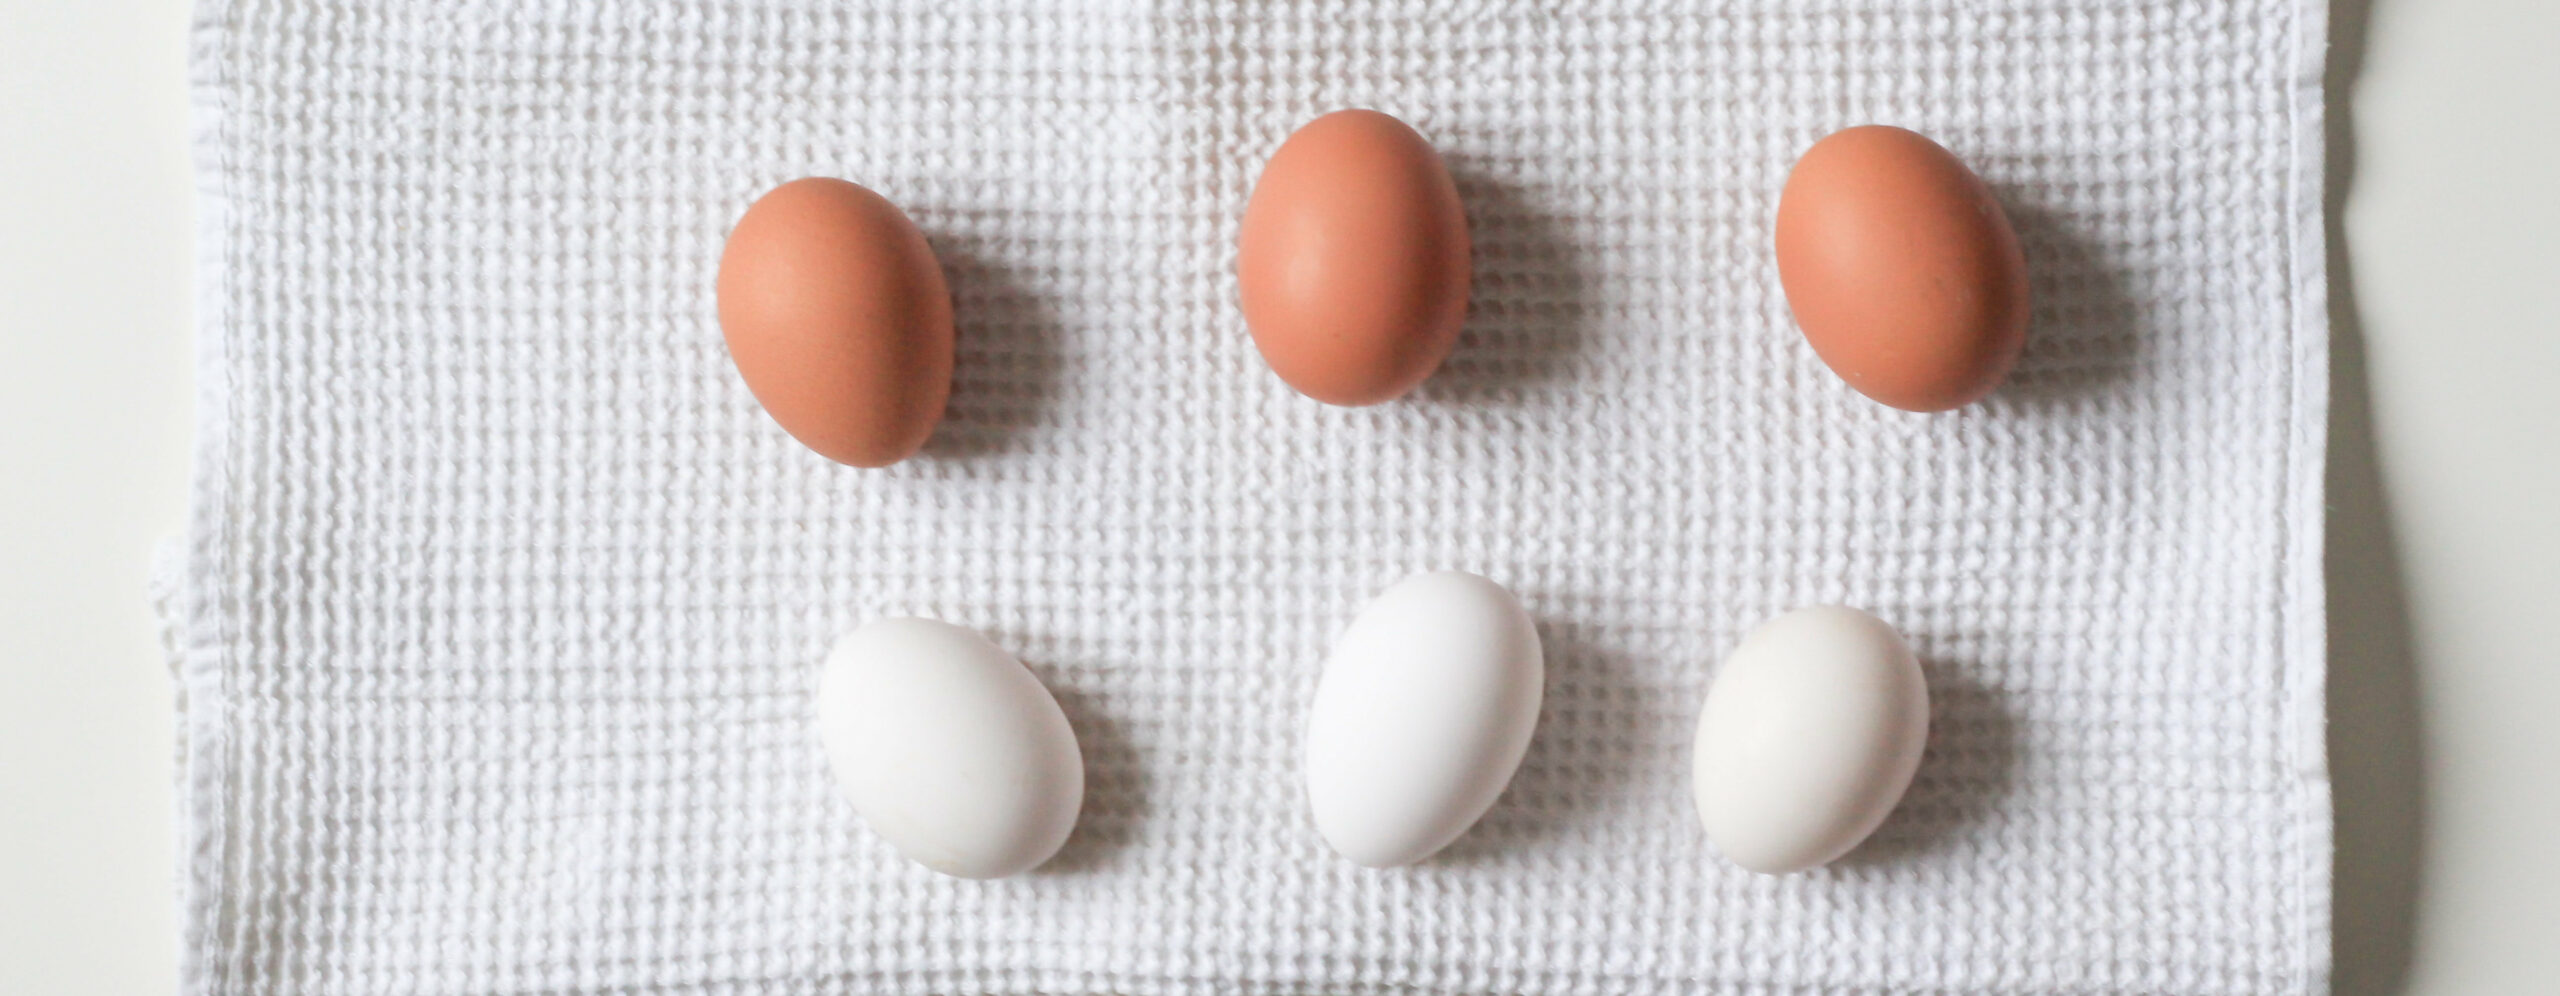 Drei weiße und drei braune Eier liegen auf einem Tuch